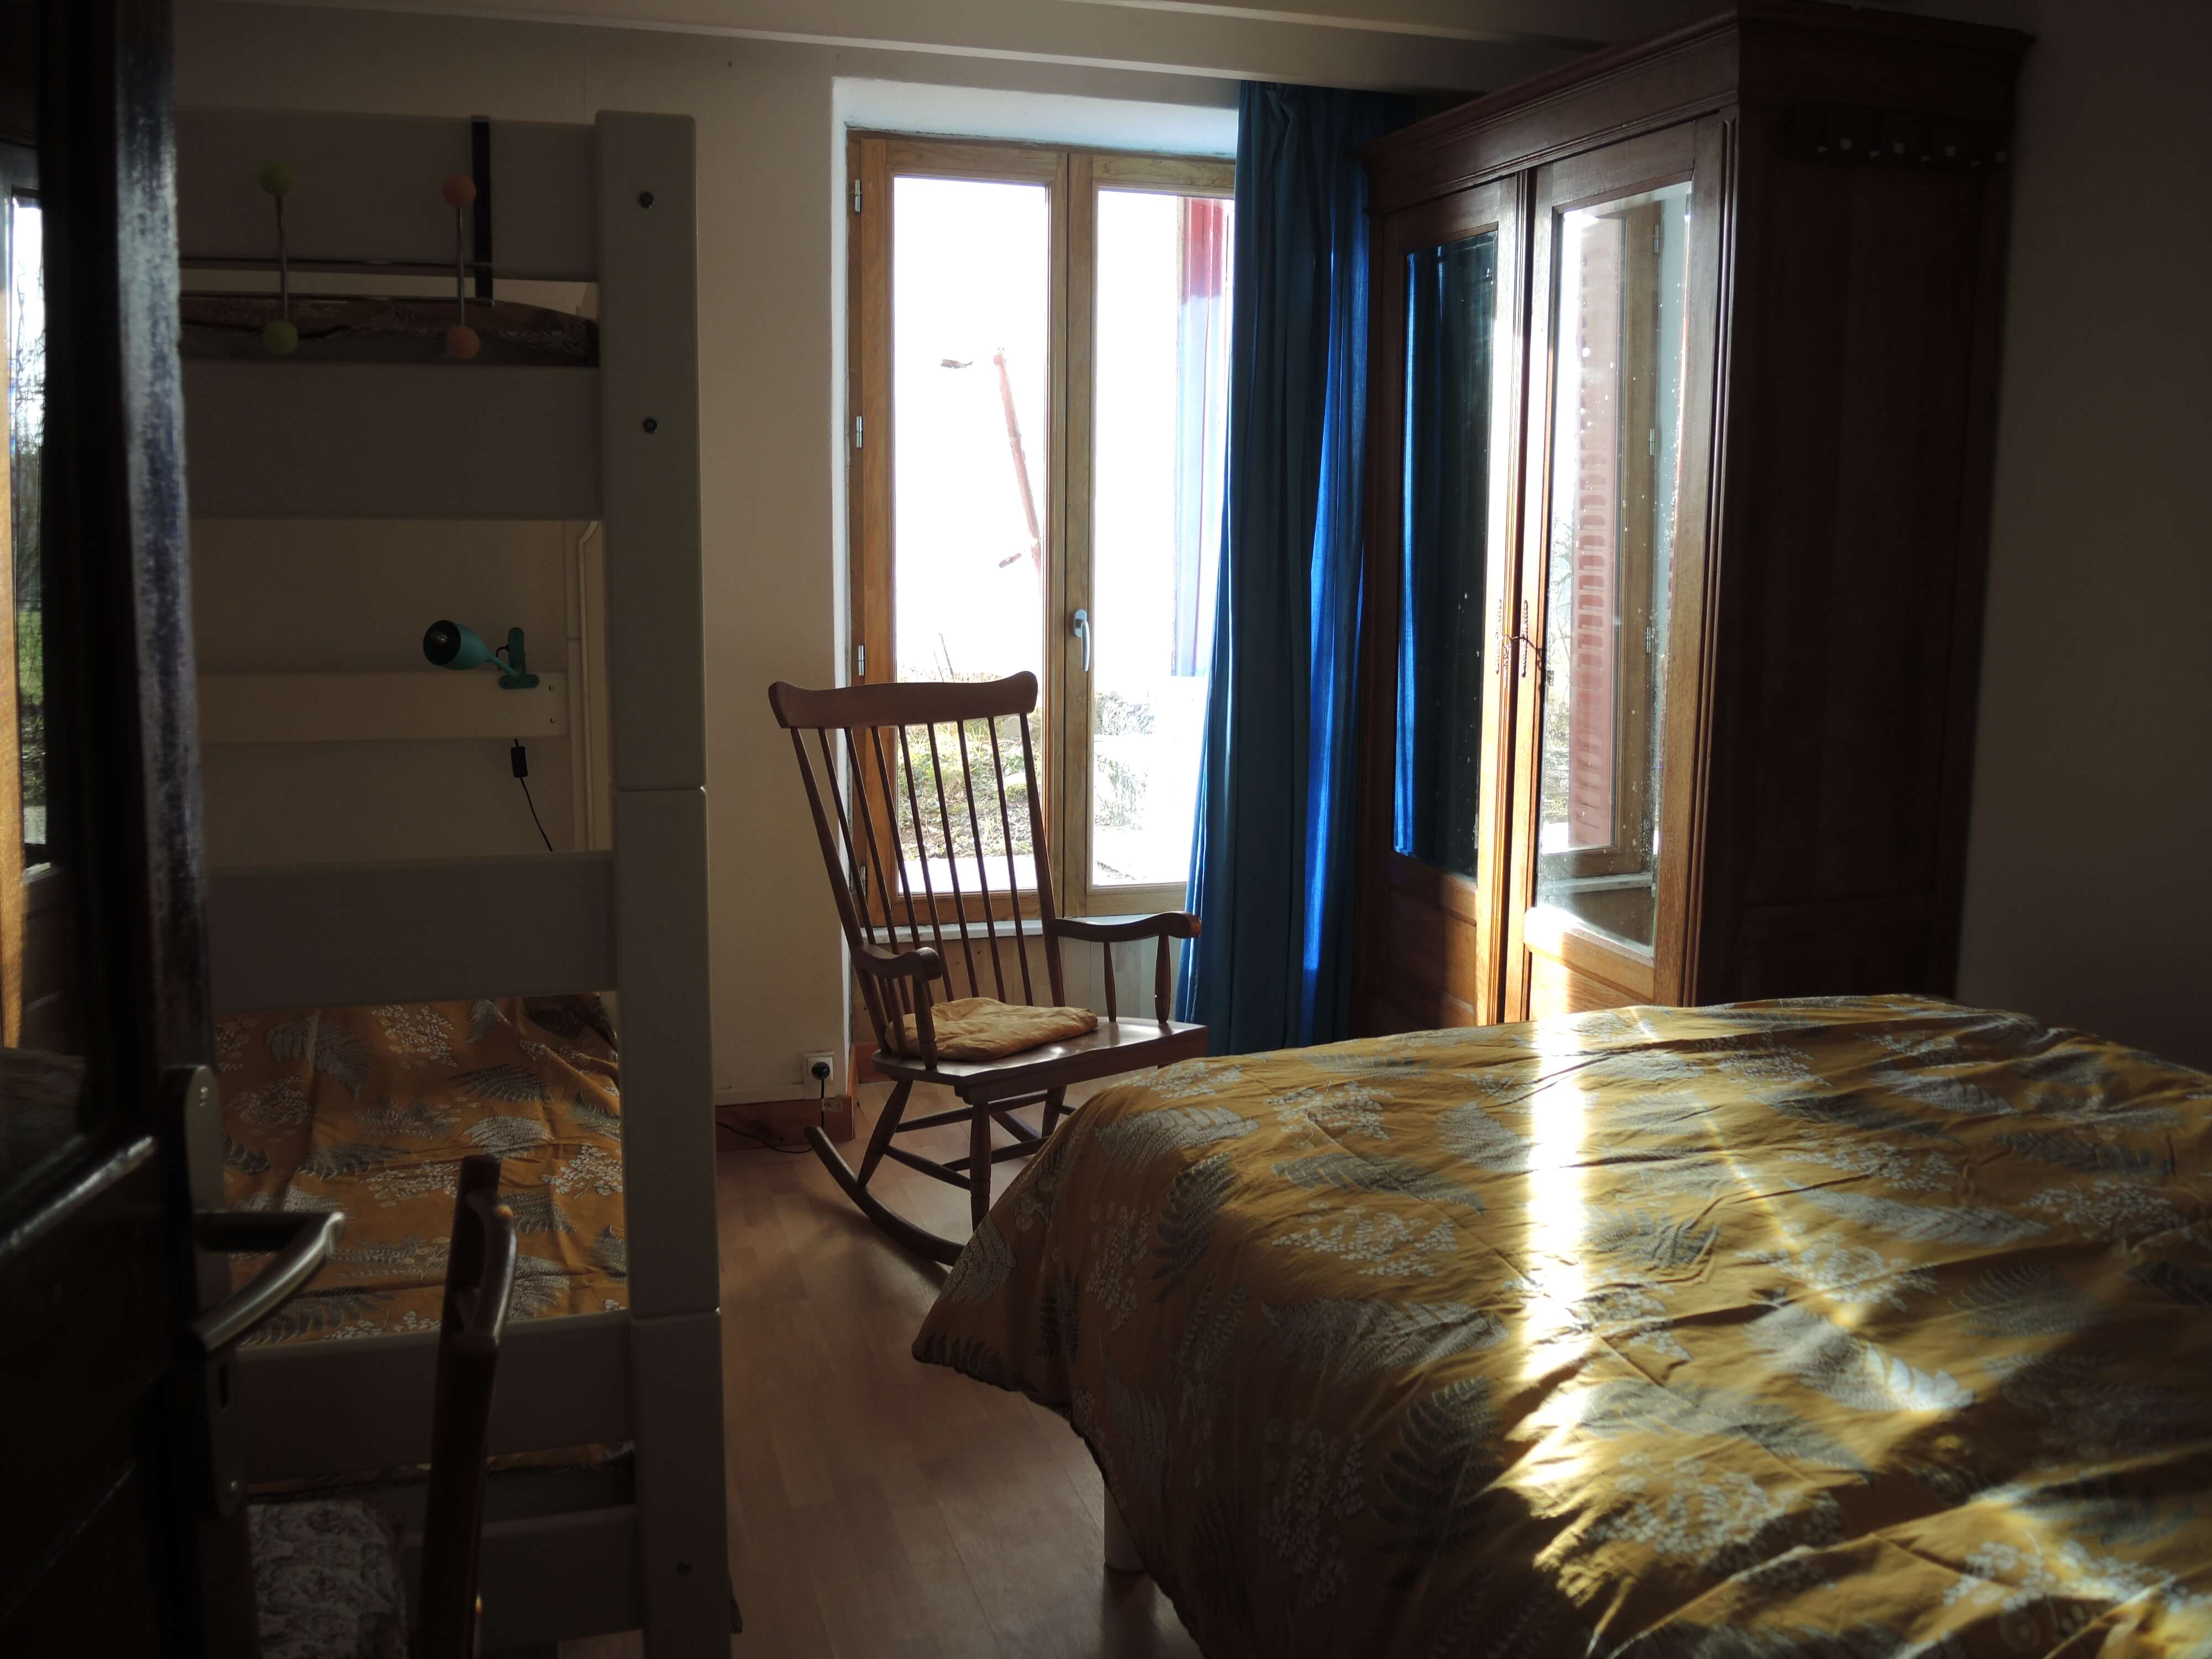 La deuxième chambre contient un lit 2 places, ainsi qu'un double lit superposé. Une armoire est aussi présente.